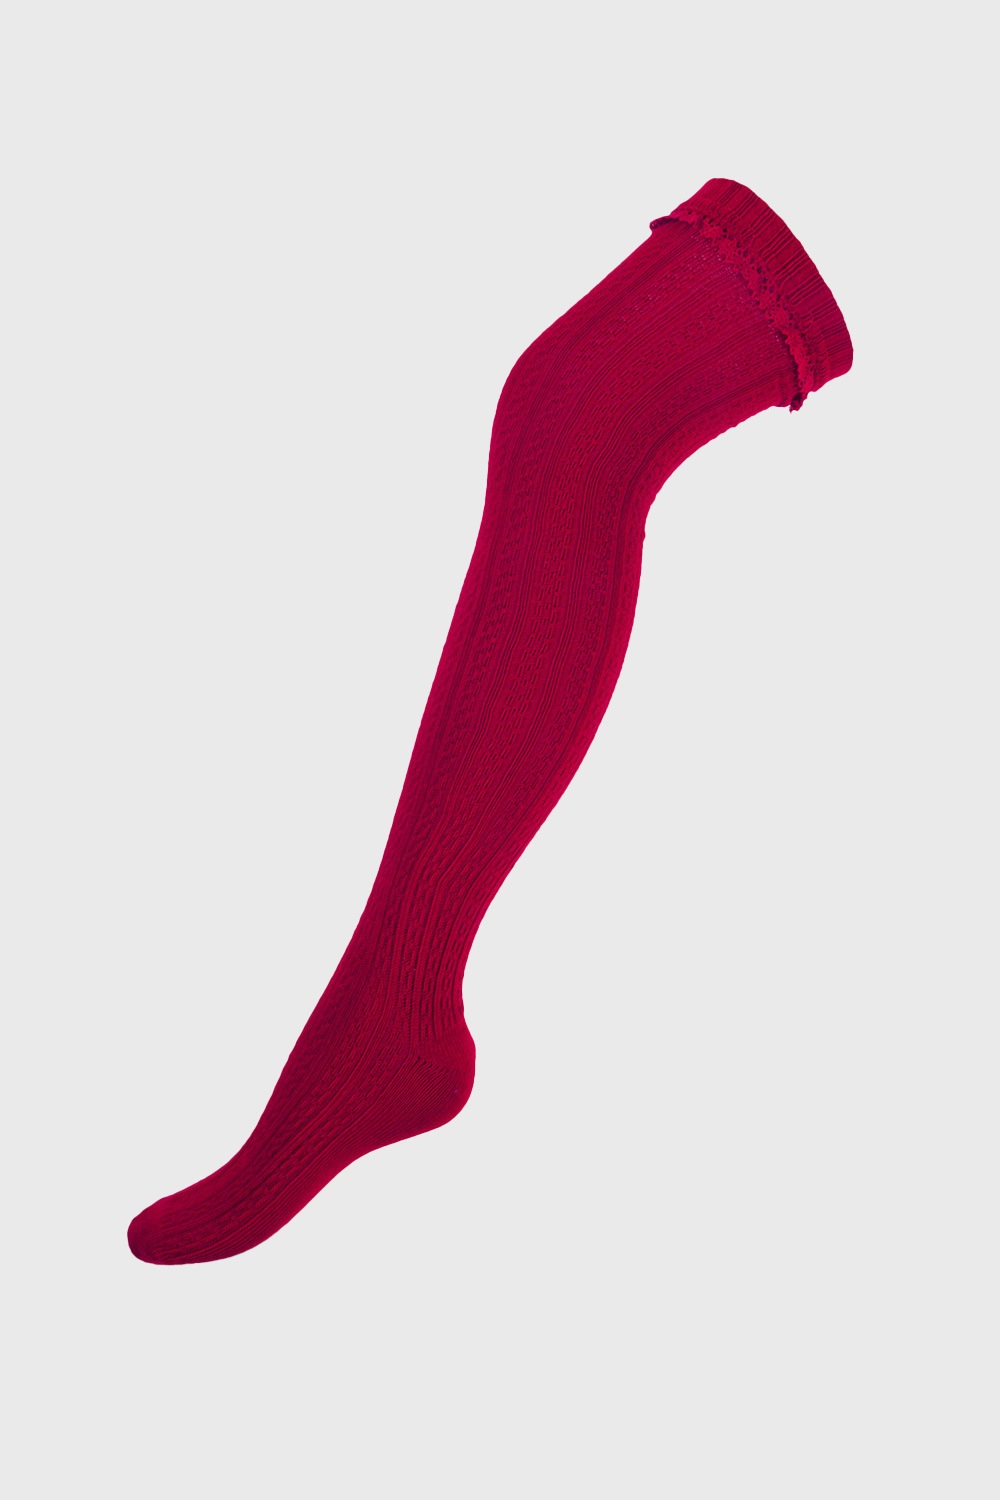 Παιδικές μονόχρωμες κάλτσες μέχρι το γόνατο | Astratex.gr